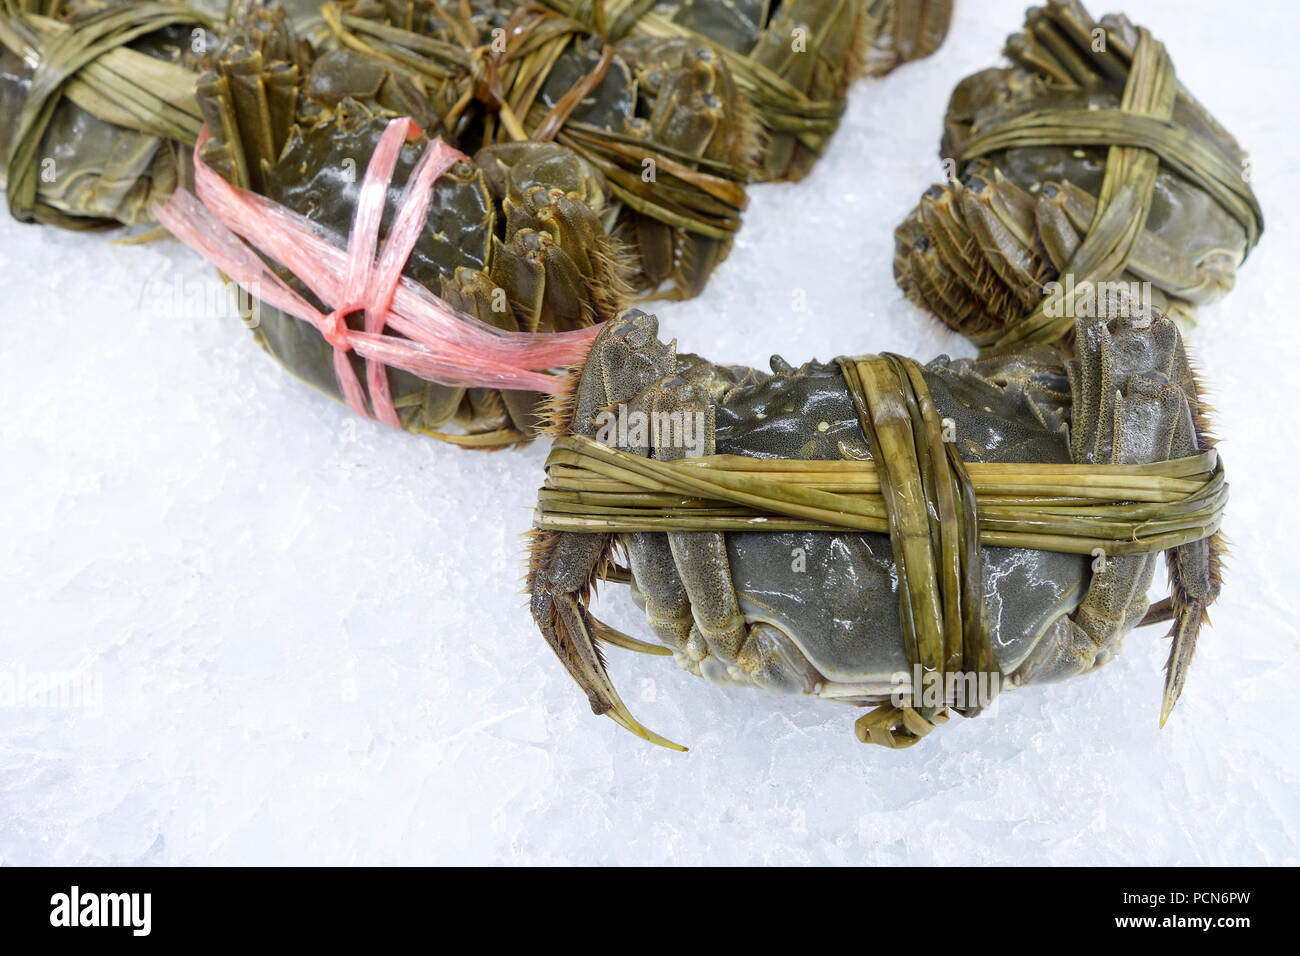 Crabe poilu shanghai matières premières les marchés traditionnels de l'IIN Banque D'Images